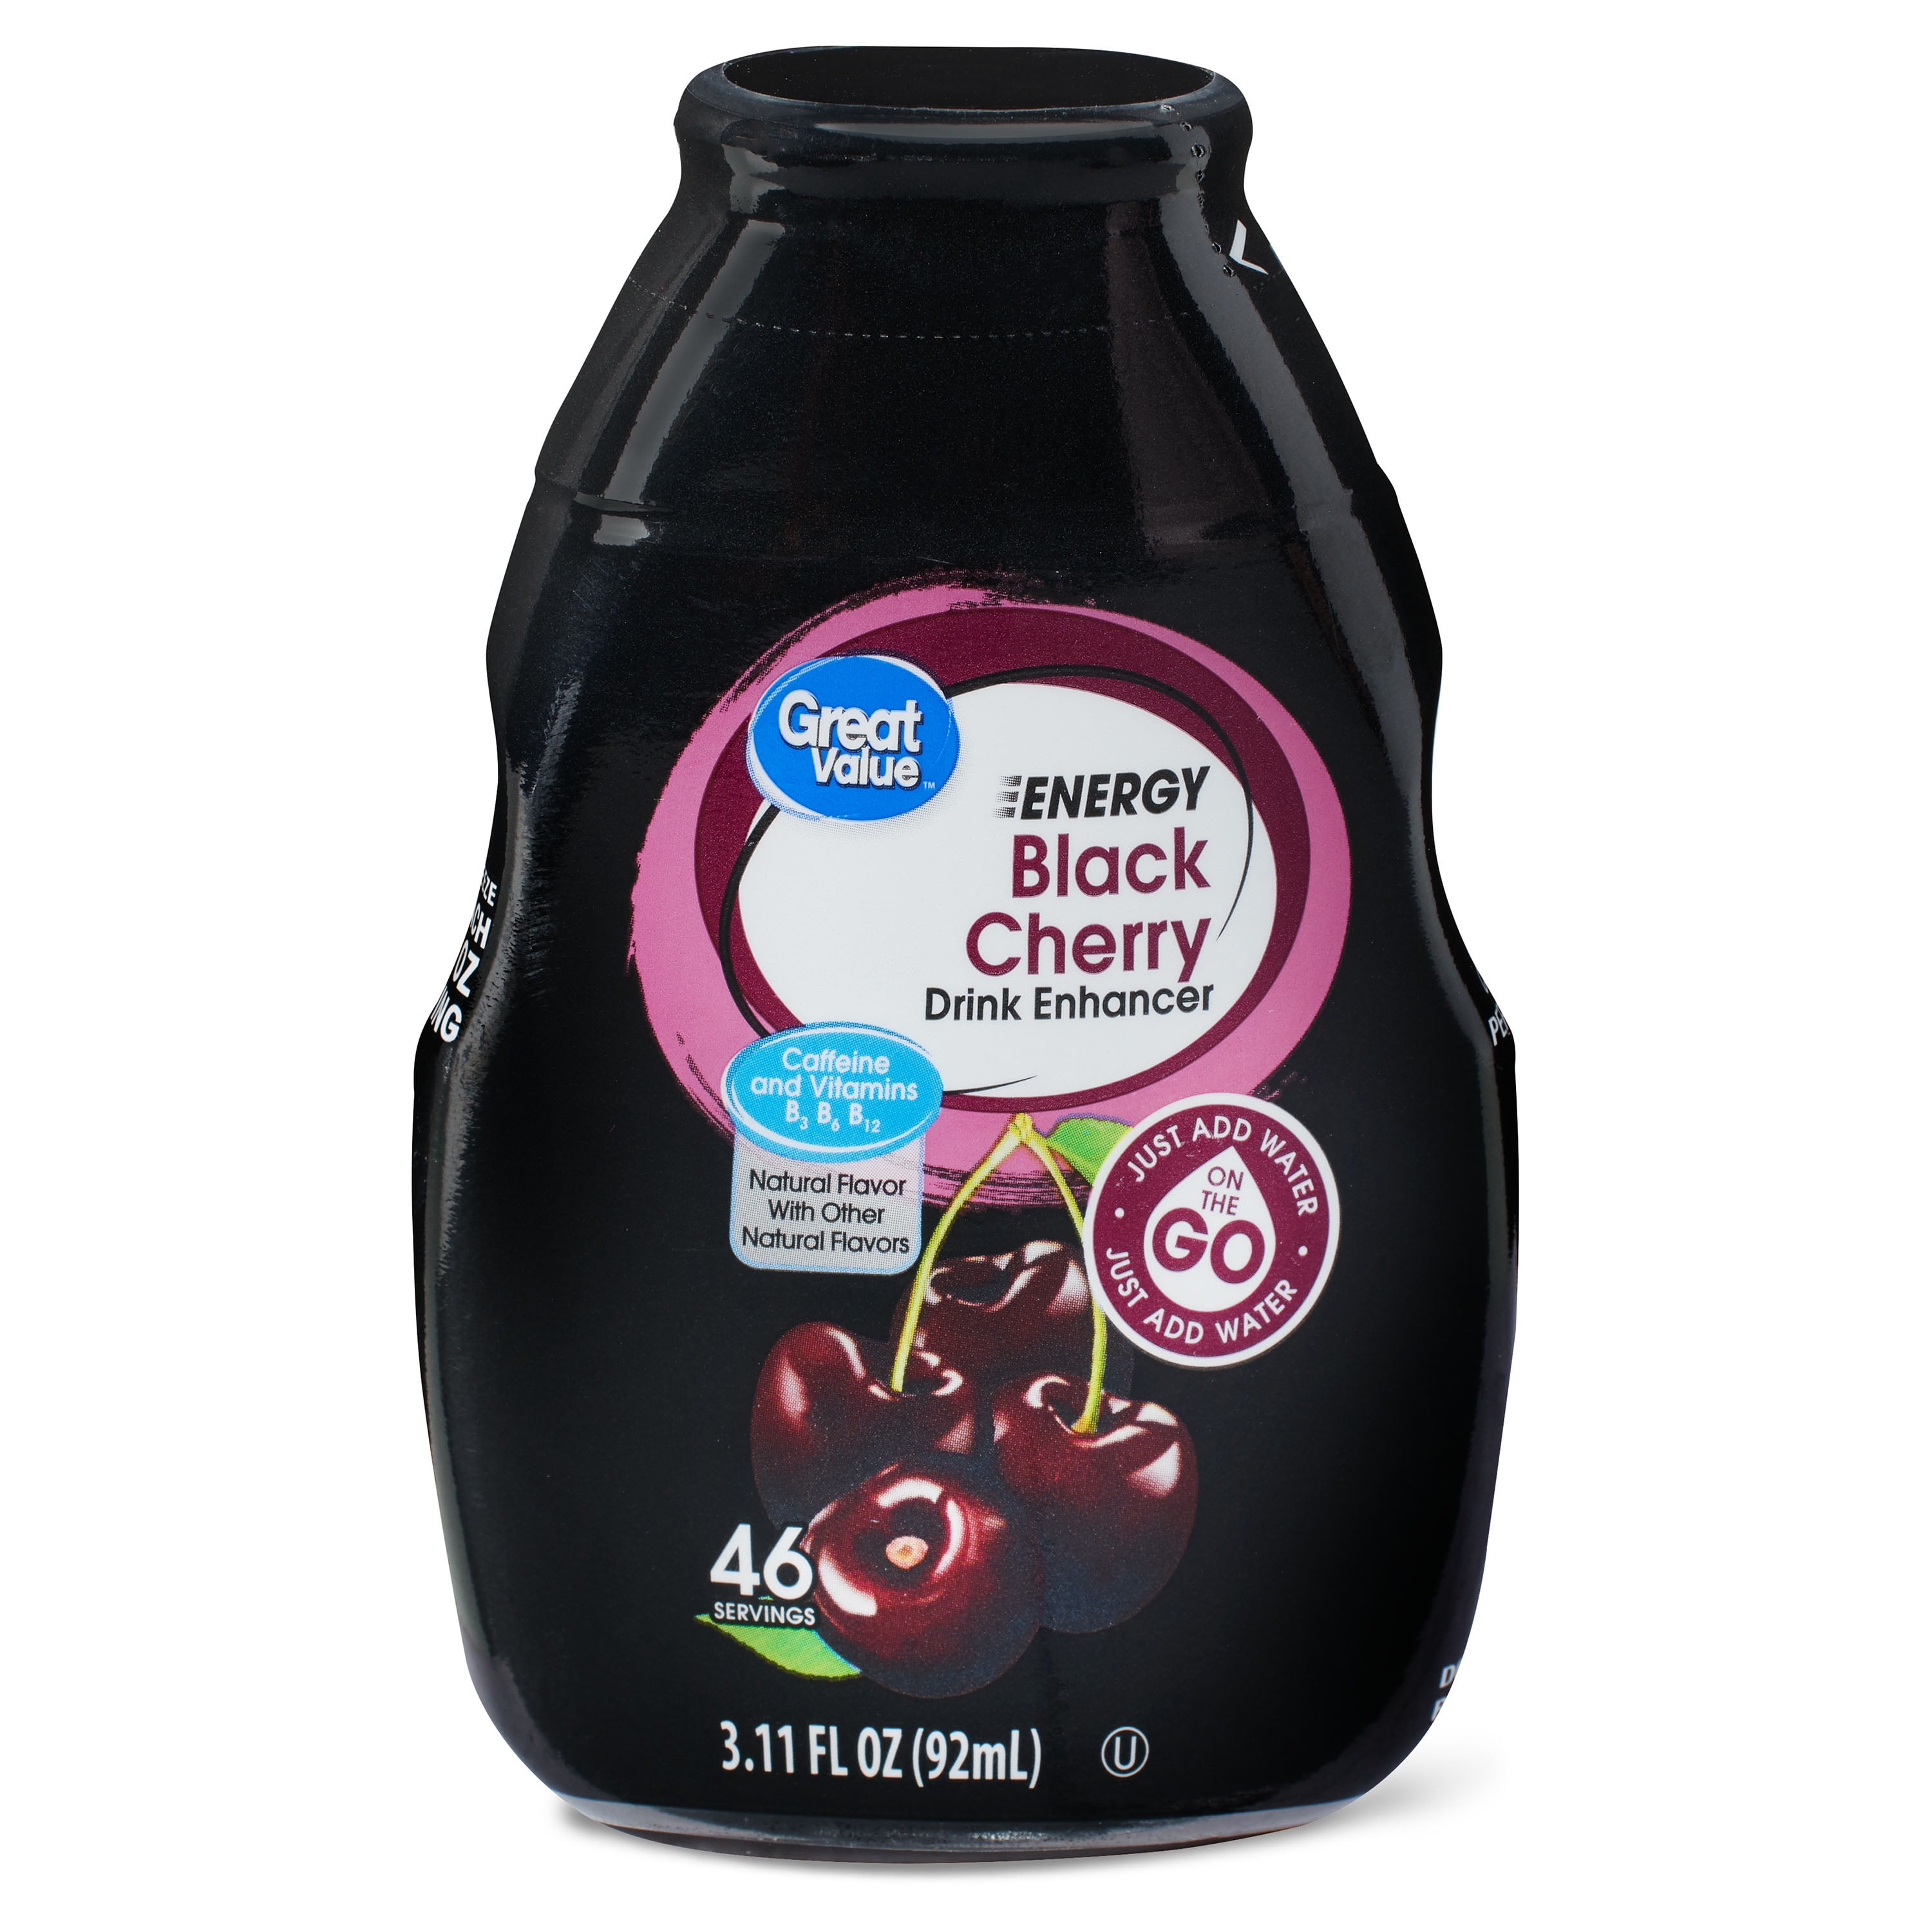 Great Value Energy Black Cherry Drink Enhancer 3 11 Fl Oz Walmart Com Walmart Com